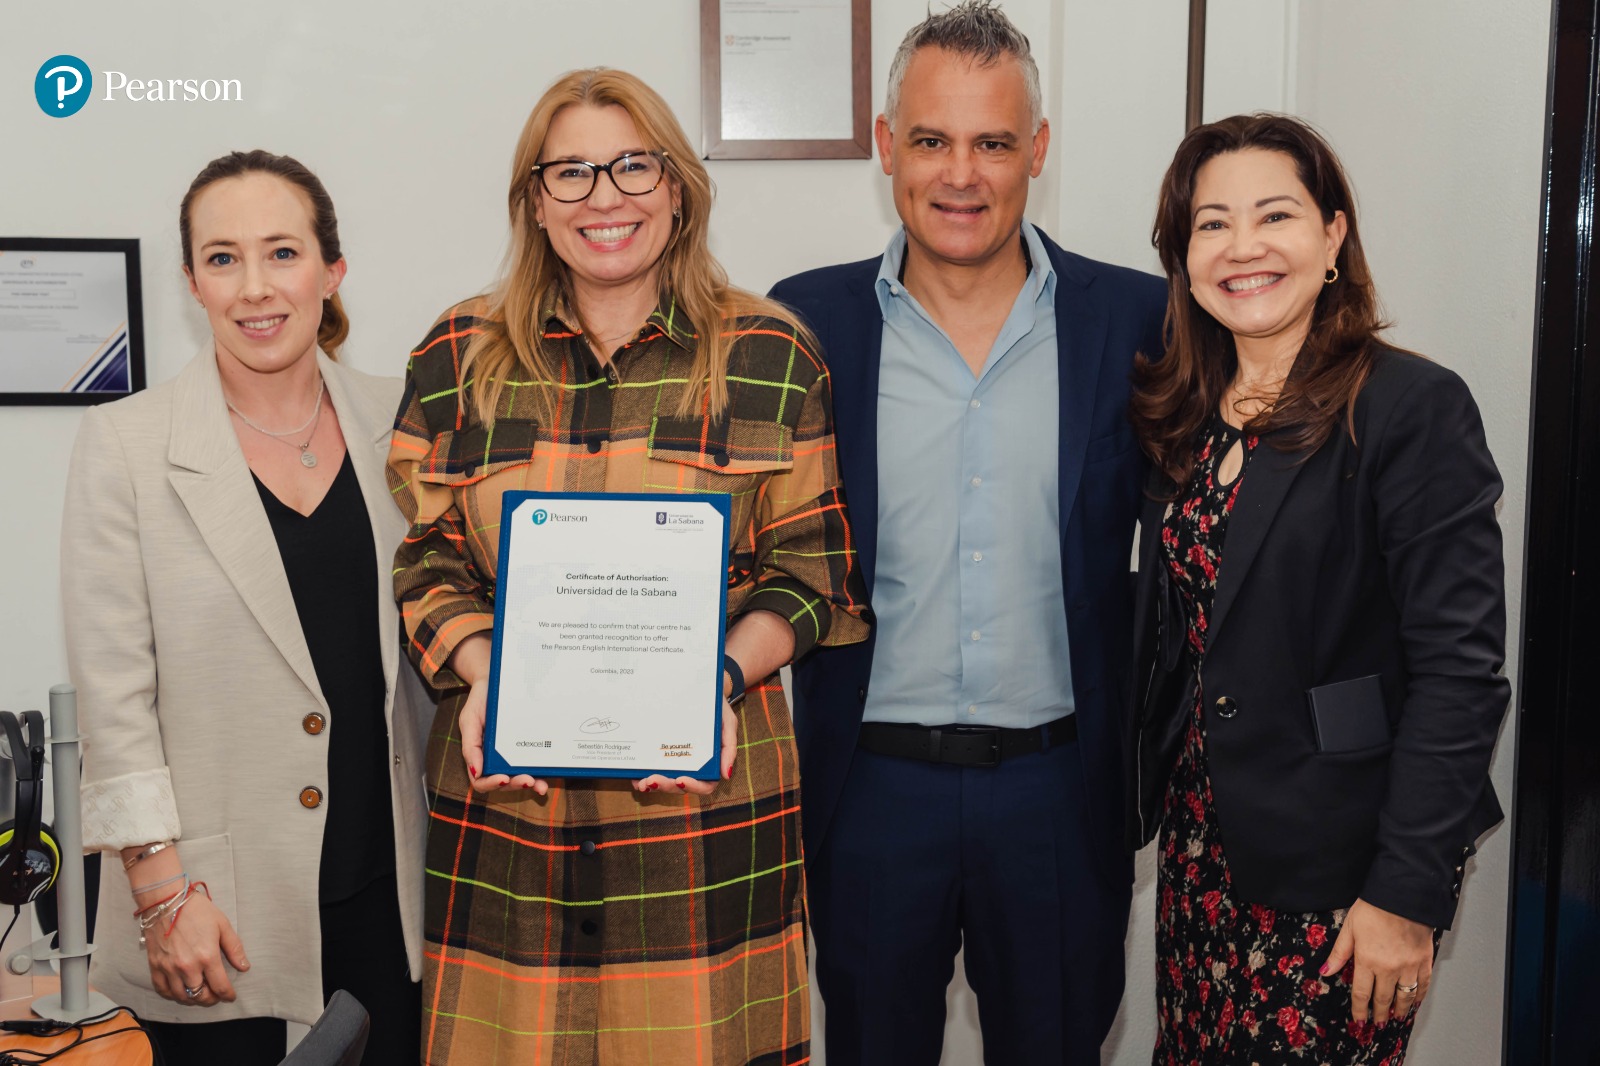 La Universidad de la Sabana y Pearson, la compañía líder mundial en aprendizaje, firmaron un convenio mediante el cual la institución educativa se incorpora a la red de centros autorizados para administrar las certificaciones internacionales del idioma inglés denominadas “Pearson English International Certificate” para Colombia